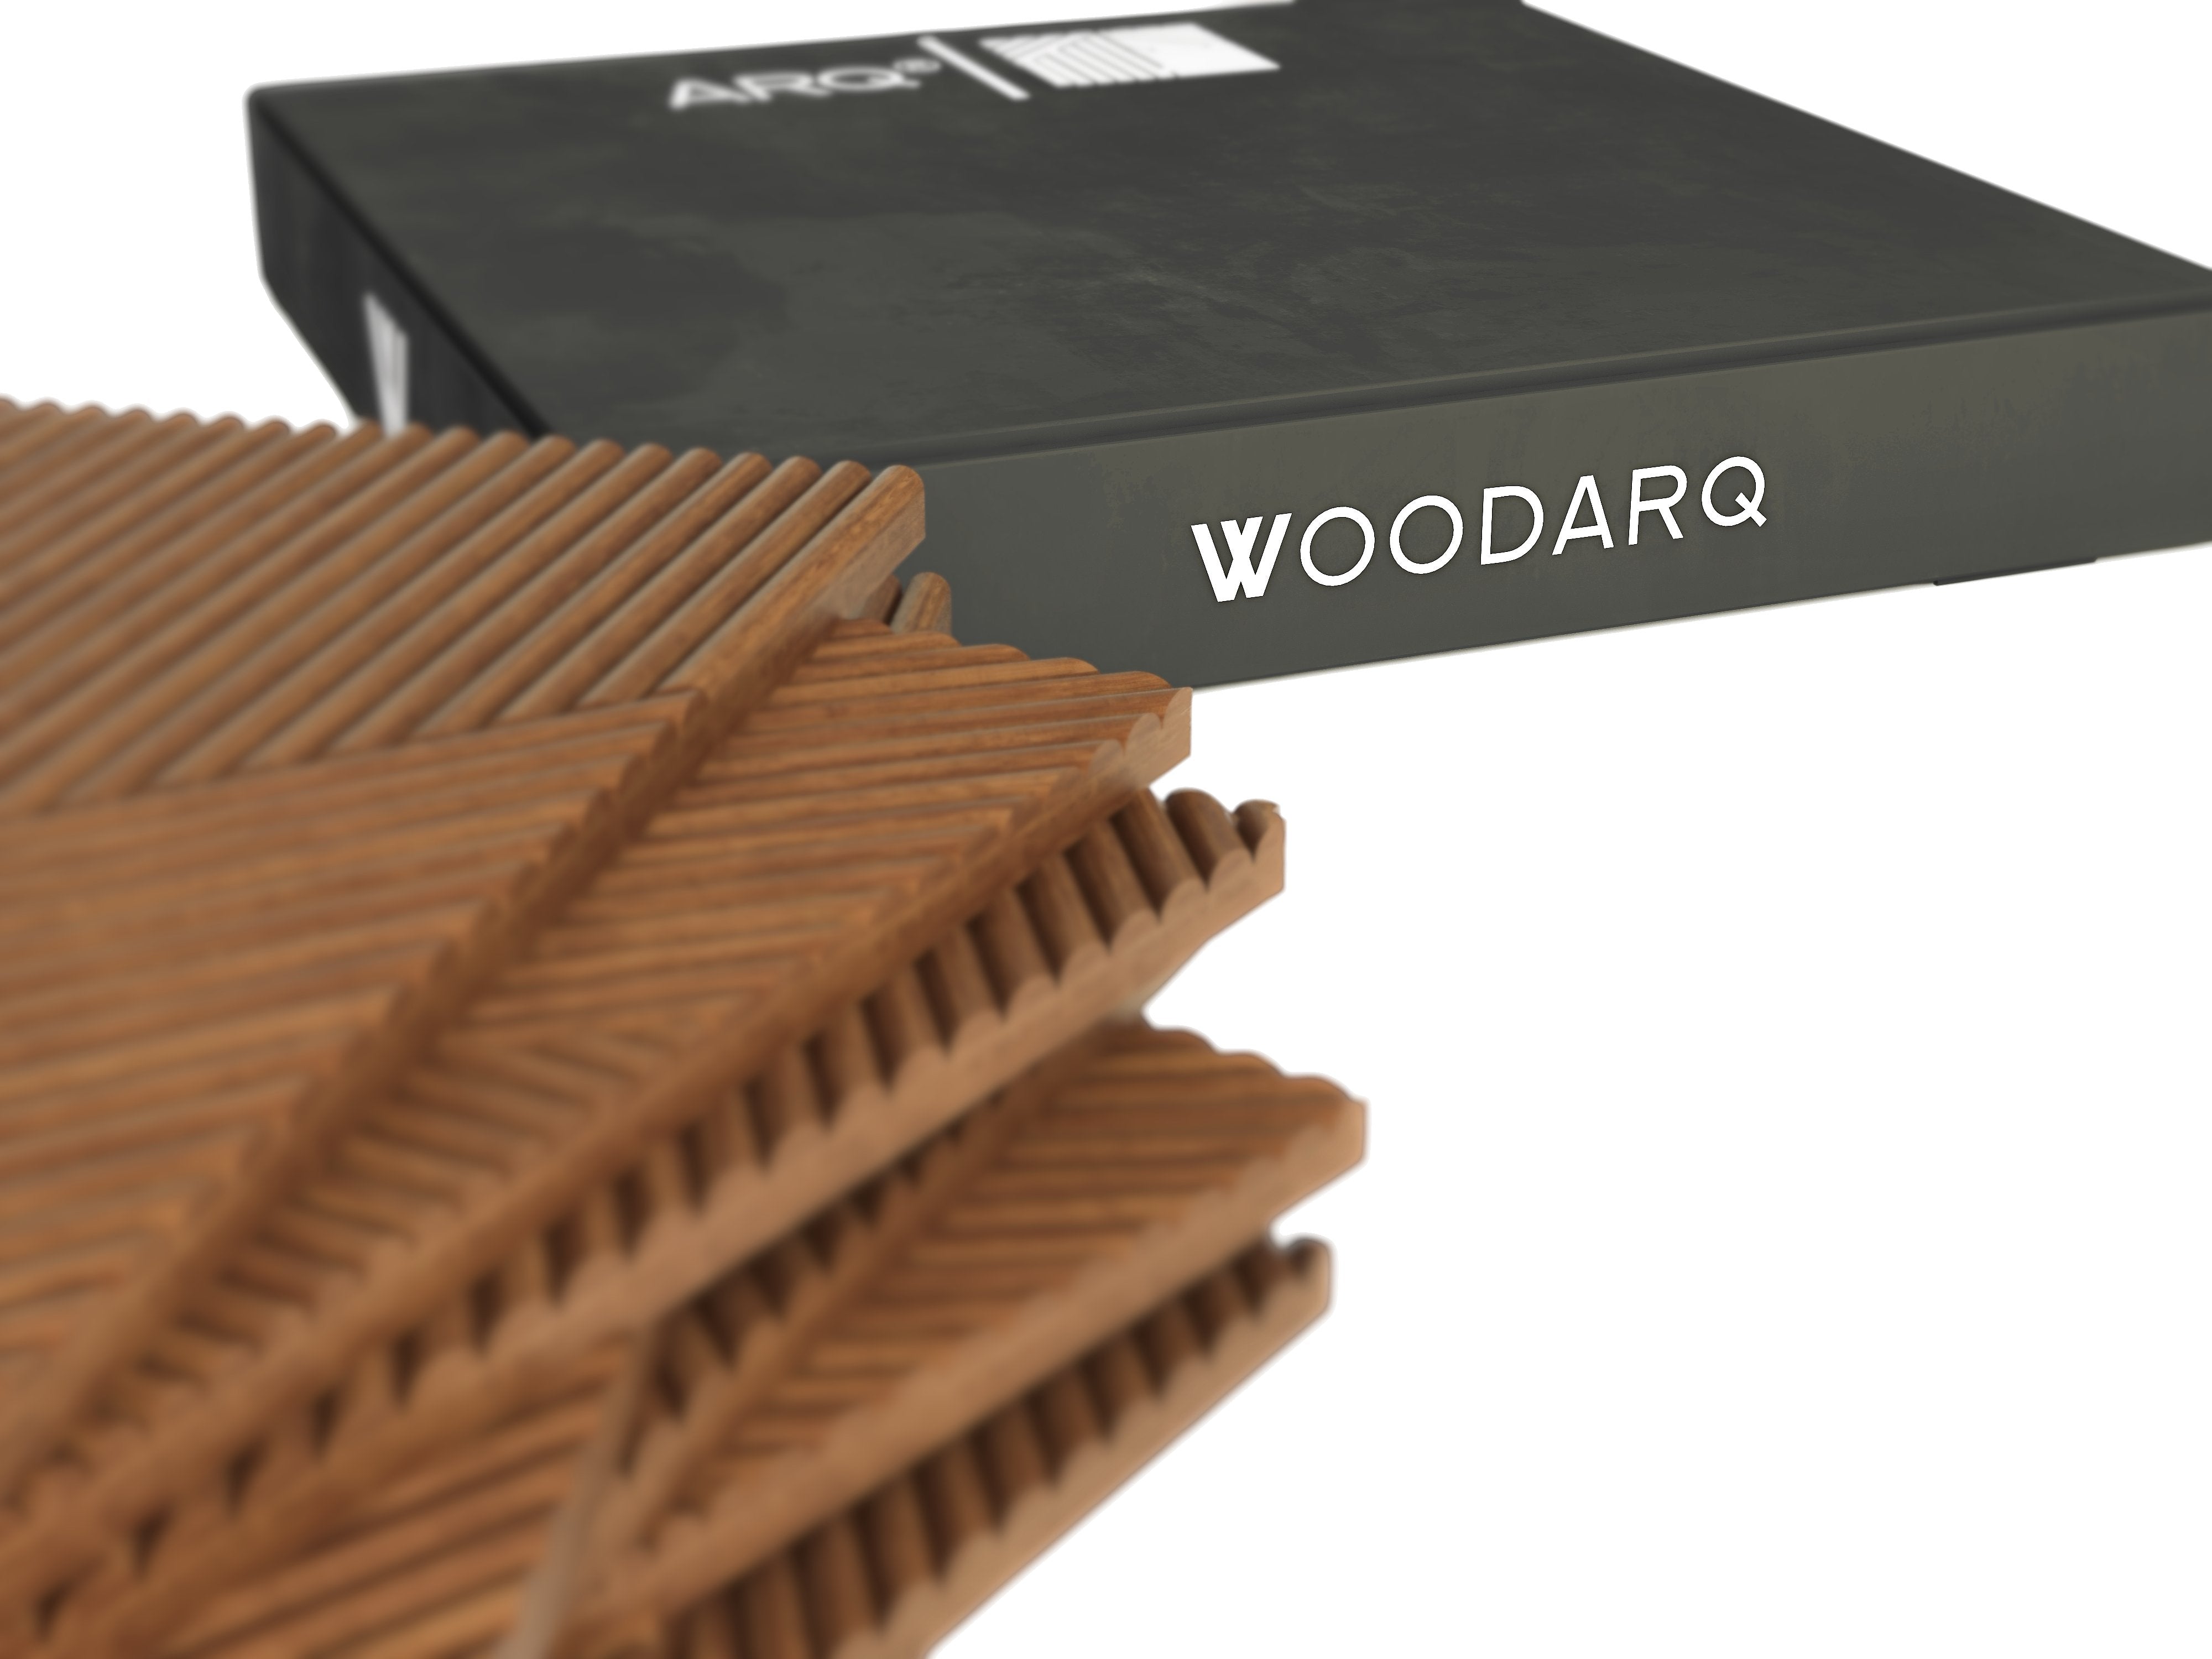 ARQ® Natural Solid Wood Wall Panels